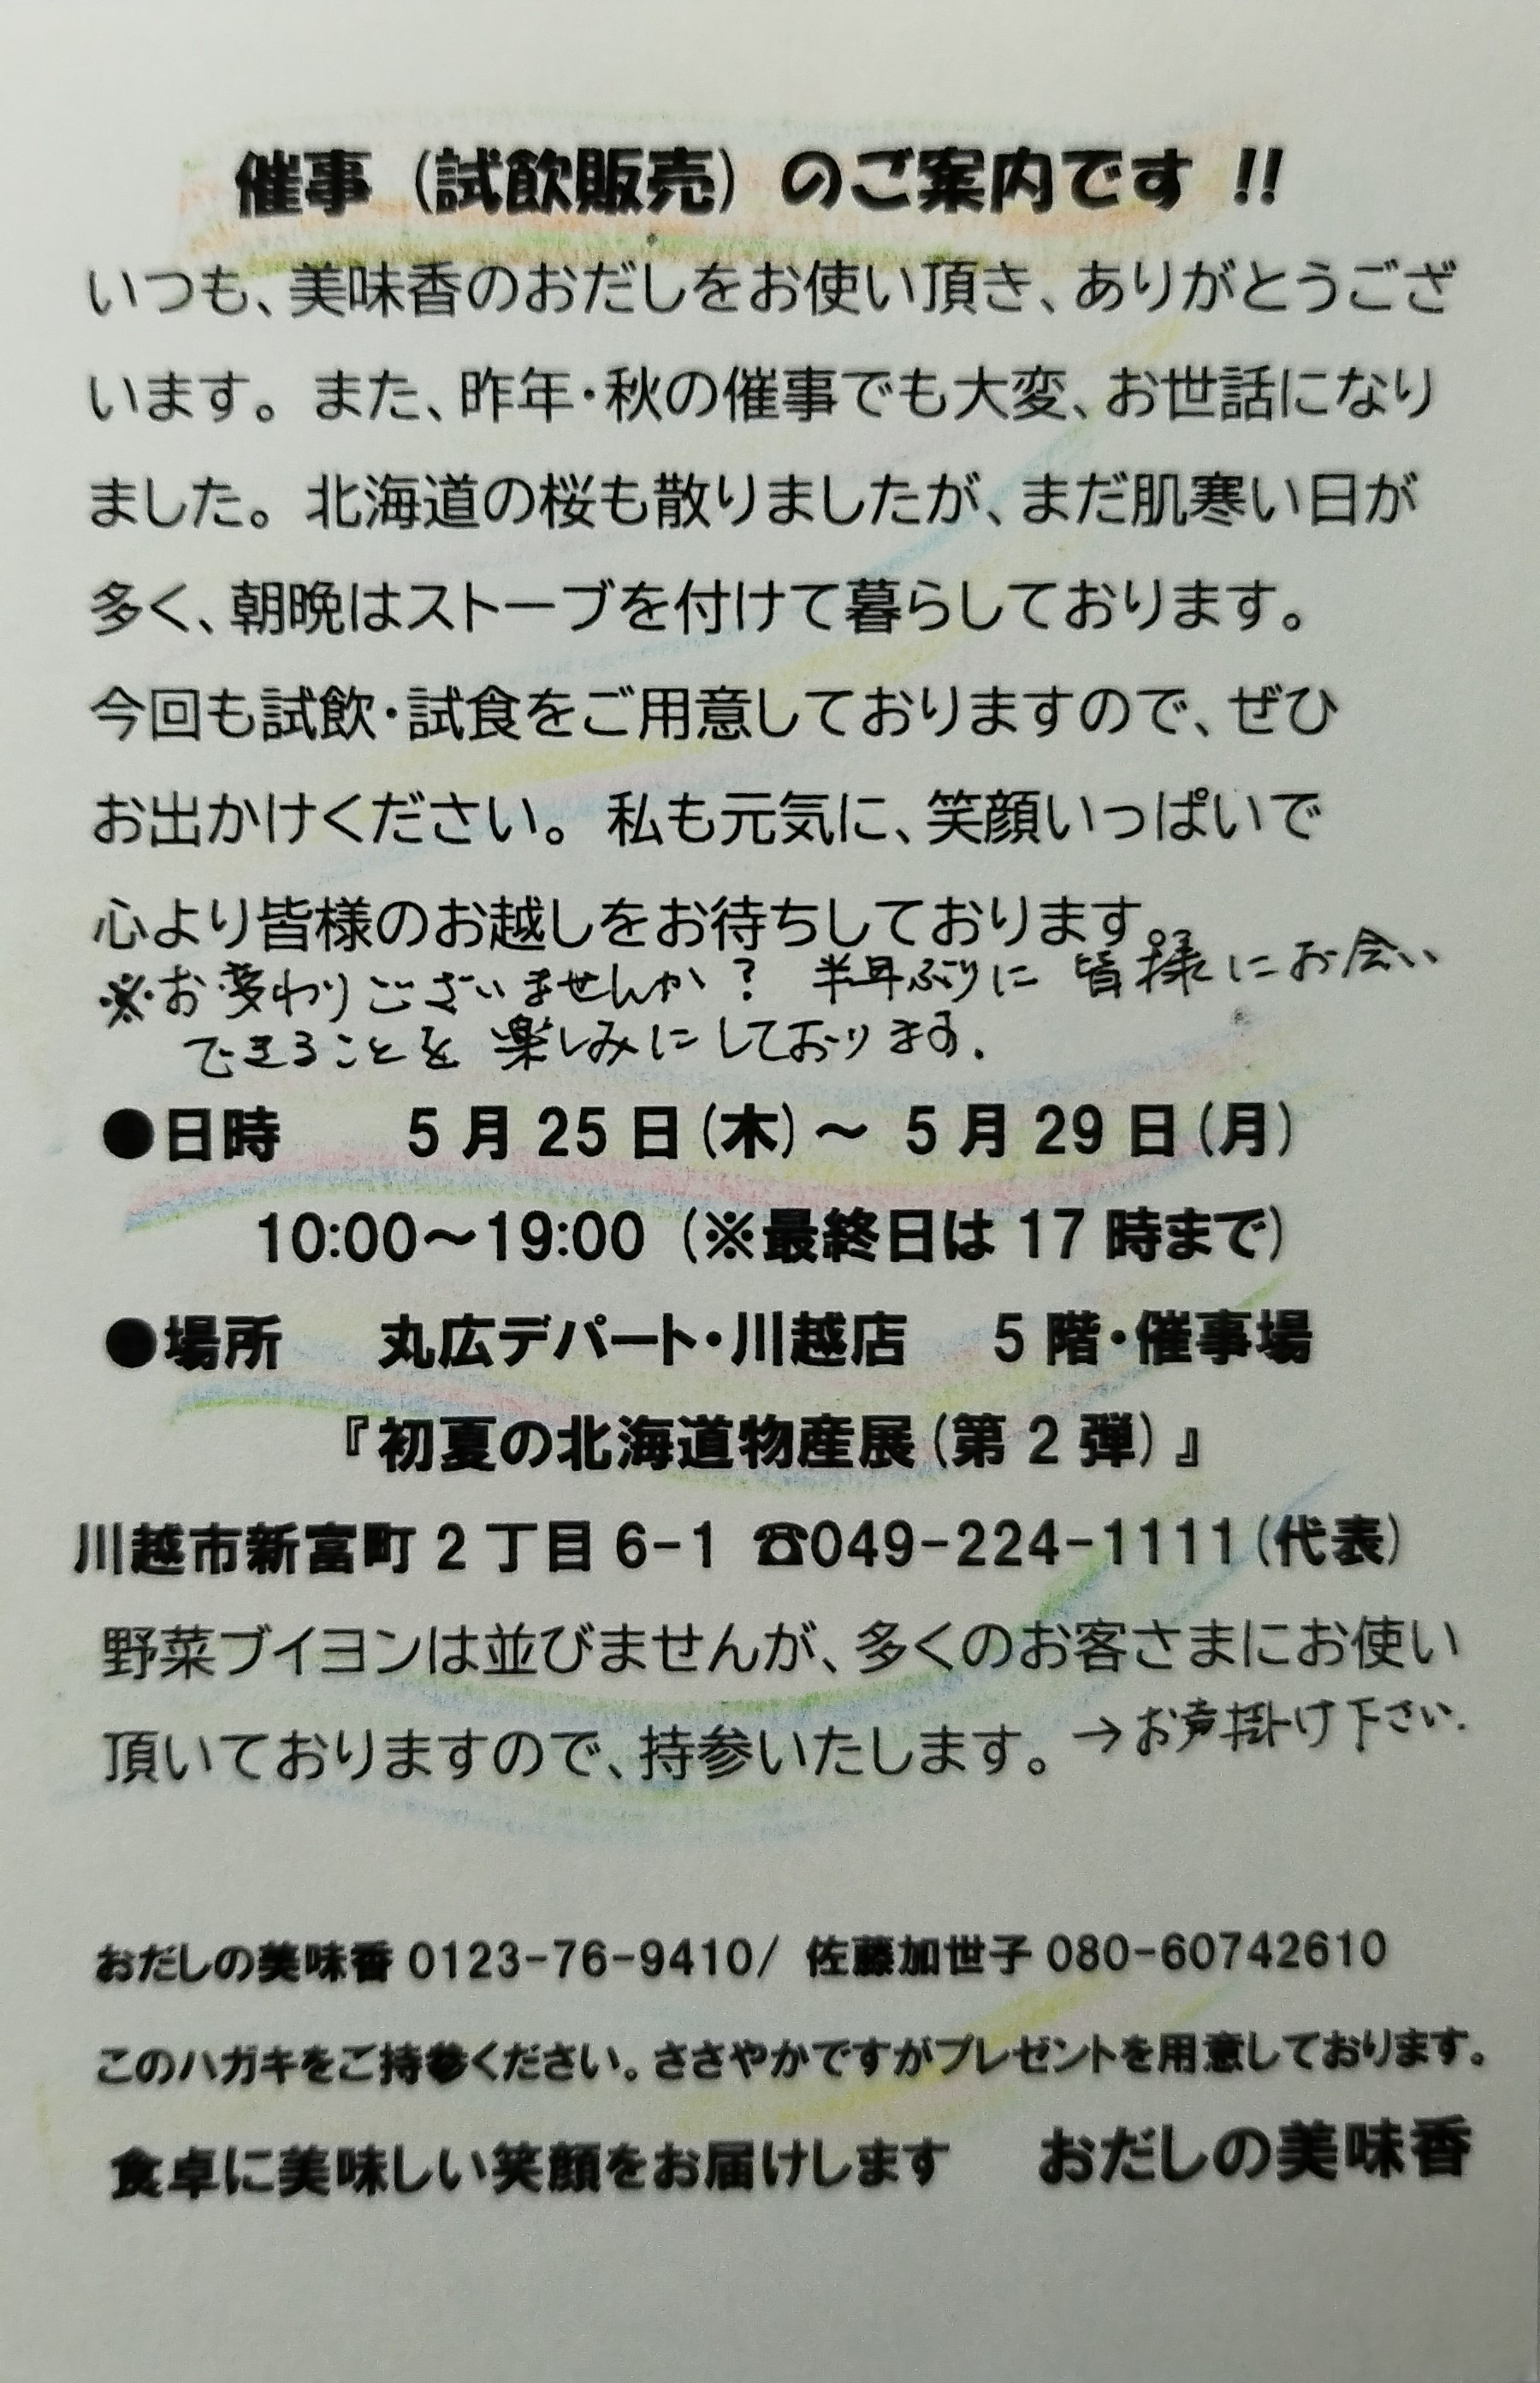 『第18回 初夏の北海道物産展』のお知らせです。